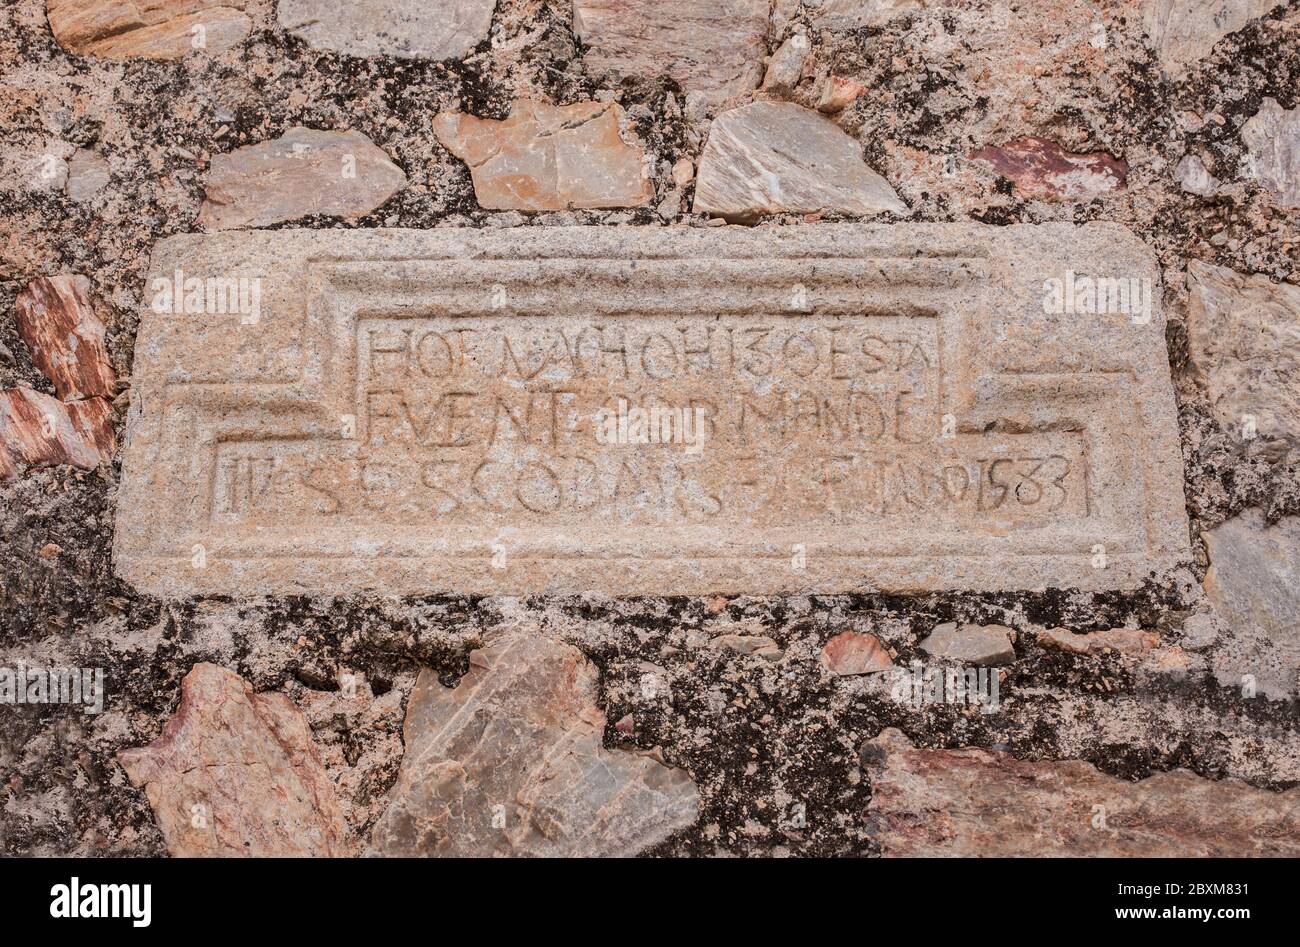 Traditioneller Brunnen der Quelle Los Moros, Hornachos, Spanien. Fundational Inschrift in Granit geschnitzt, 1583 Stockfoto